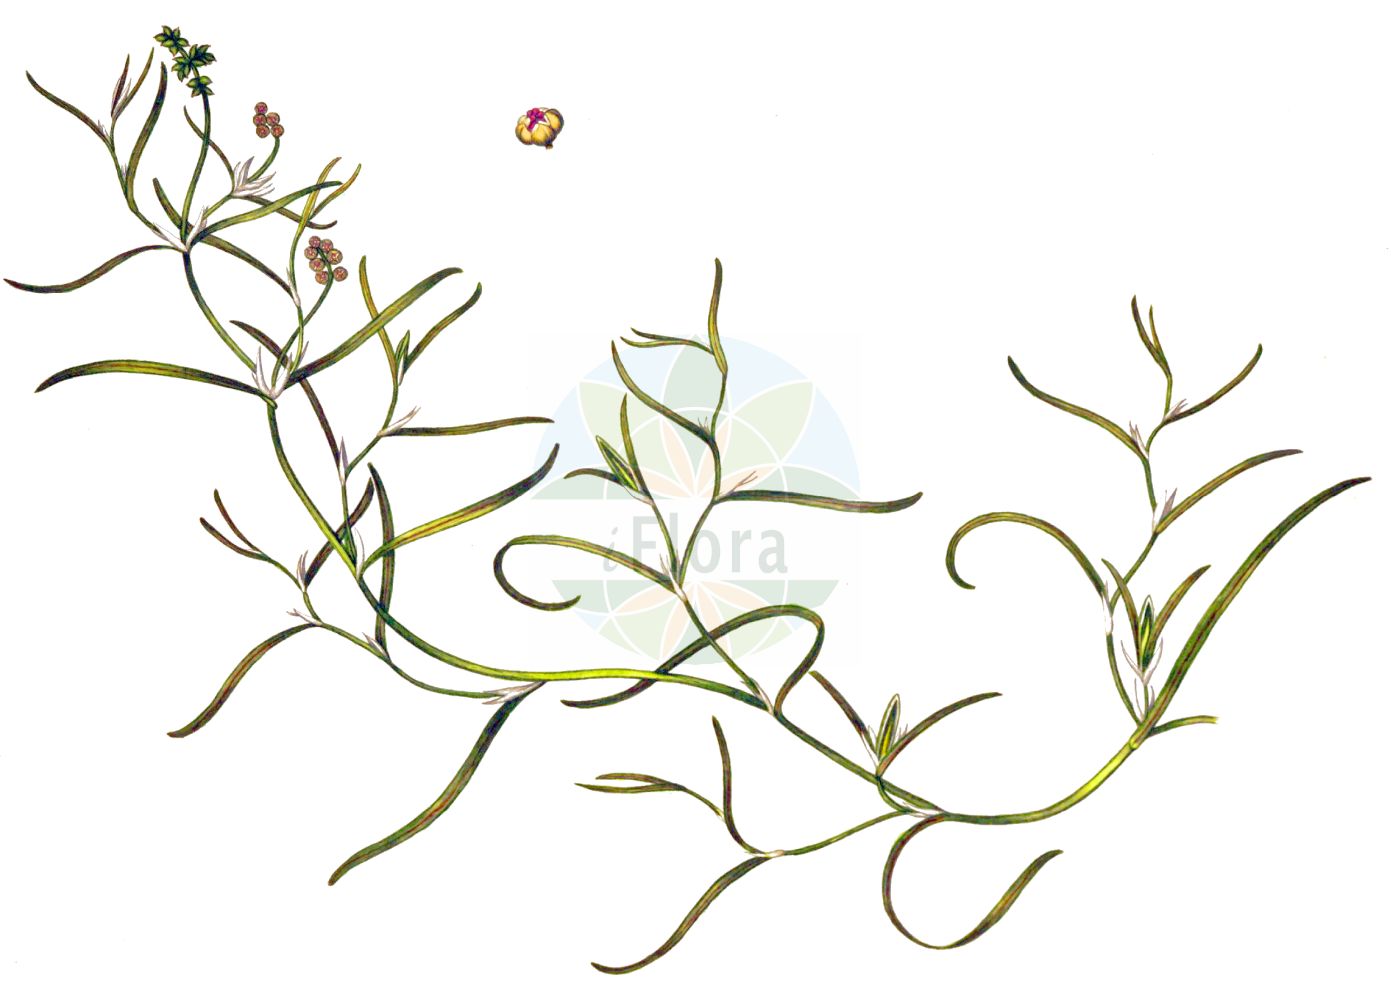 Historische Abbildung von Potamogeton compressus (Flachstängliges Laichkraut - Grass-wrack Pondweed). Das Bild zeigt Blatt, Bluete, Frucht und Same. ---- Historical Drawing of Potamogeton compressus (Flachstängliges Laichkraut - Grass-wrack Pondweed). The image is showing leaf, flower, fruit and seed.(Potamogeton compressus,Flachstängliges Laichkraut,Grass-wrack Pondweed,Potamogeton carinatus,Potamogeton compressus,Potamogeton zosterifolius,Flachstaengliges Laichkraut,Flachstengeliges Laichkraut,Grass-wrack Pondweed,Flatstem Pondweed,Eel-grass Pondweed,Potamogeton,Laichkraut,Pondweed,Potamogetonaceae,Laichkrautgewächse,Pondweed family,Blatt,Bluete,Frucht,Same,leaf,flower,fruit,seed,Oeder (1761-1883))